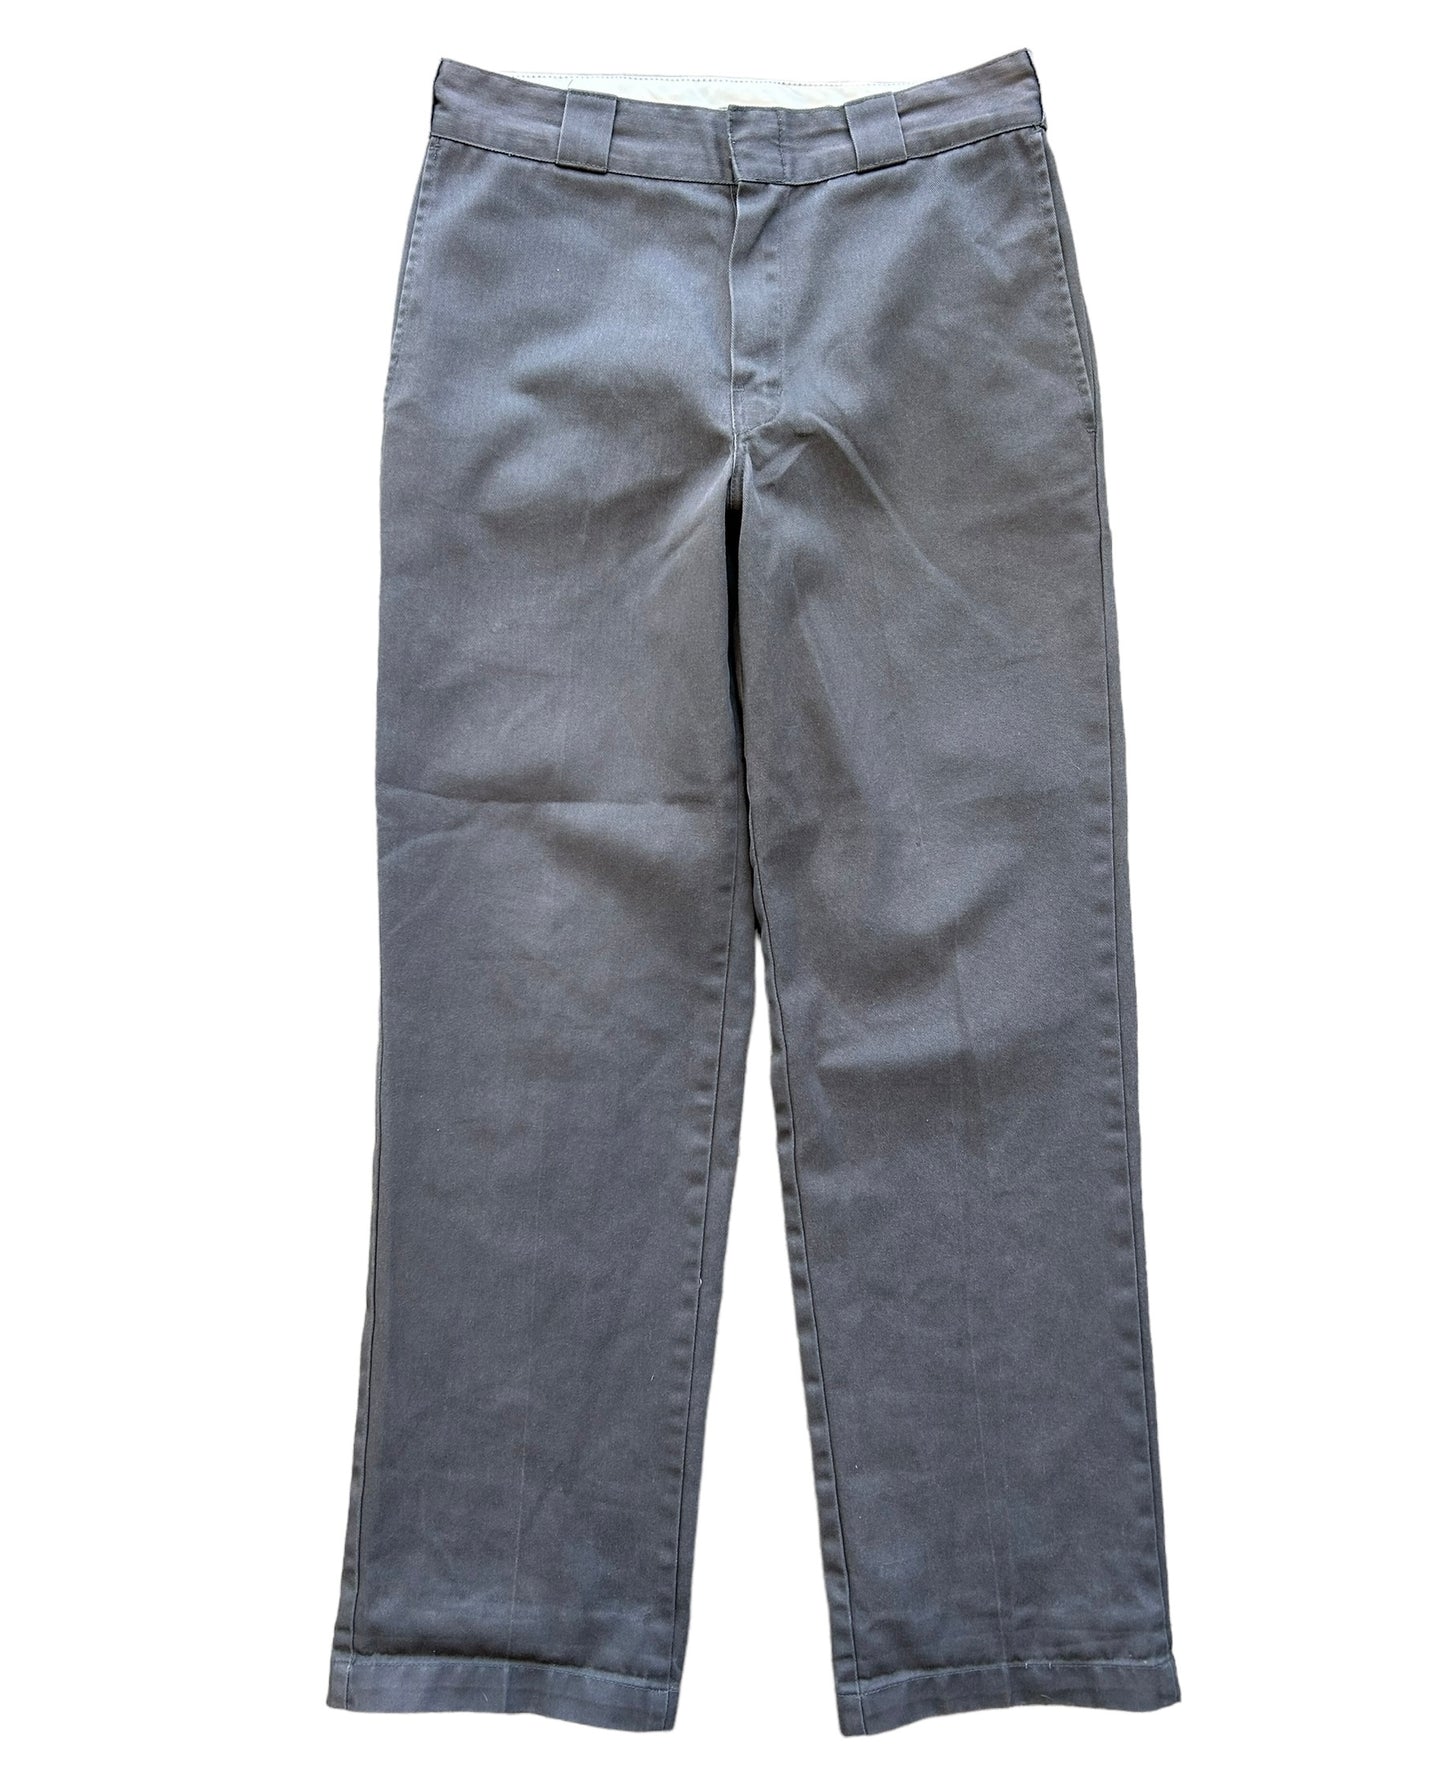 Dickies Style 874 Pants